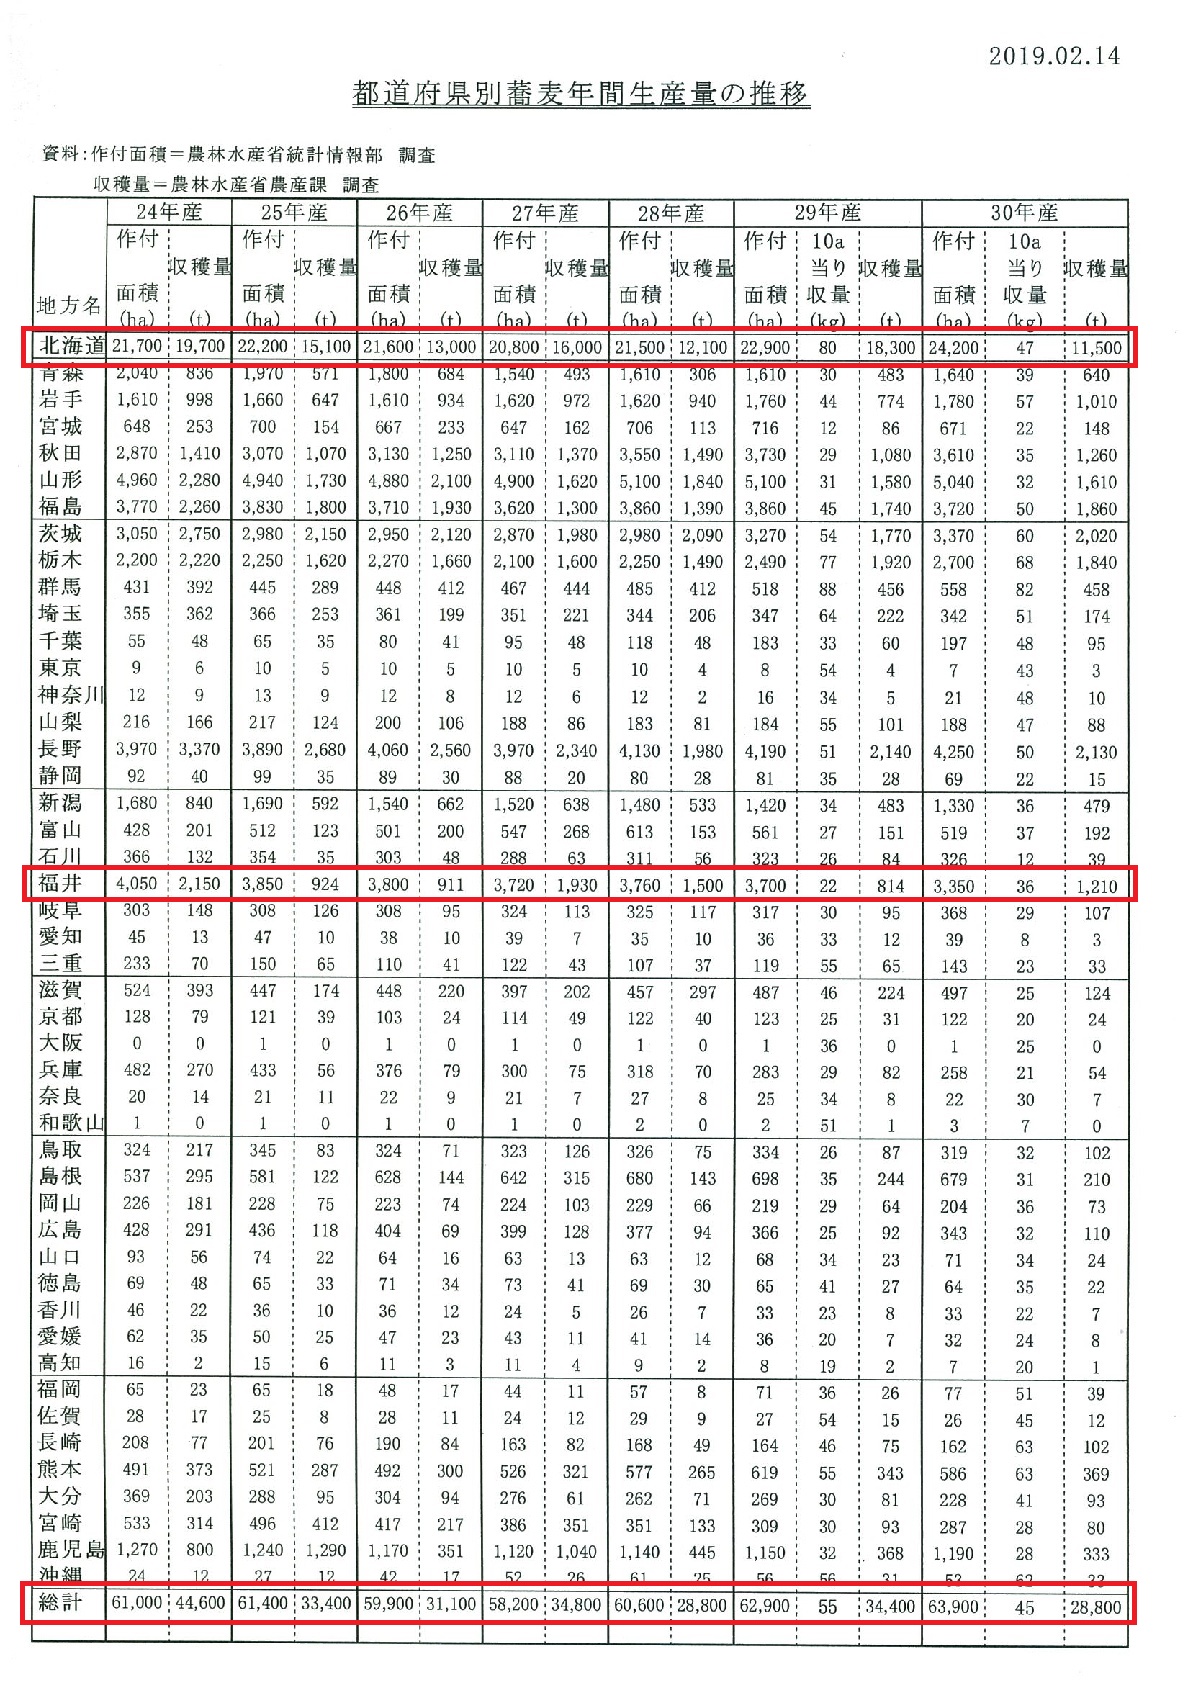 都道府県別蕎麦年間生産量の推移一覧表